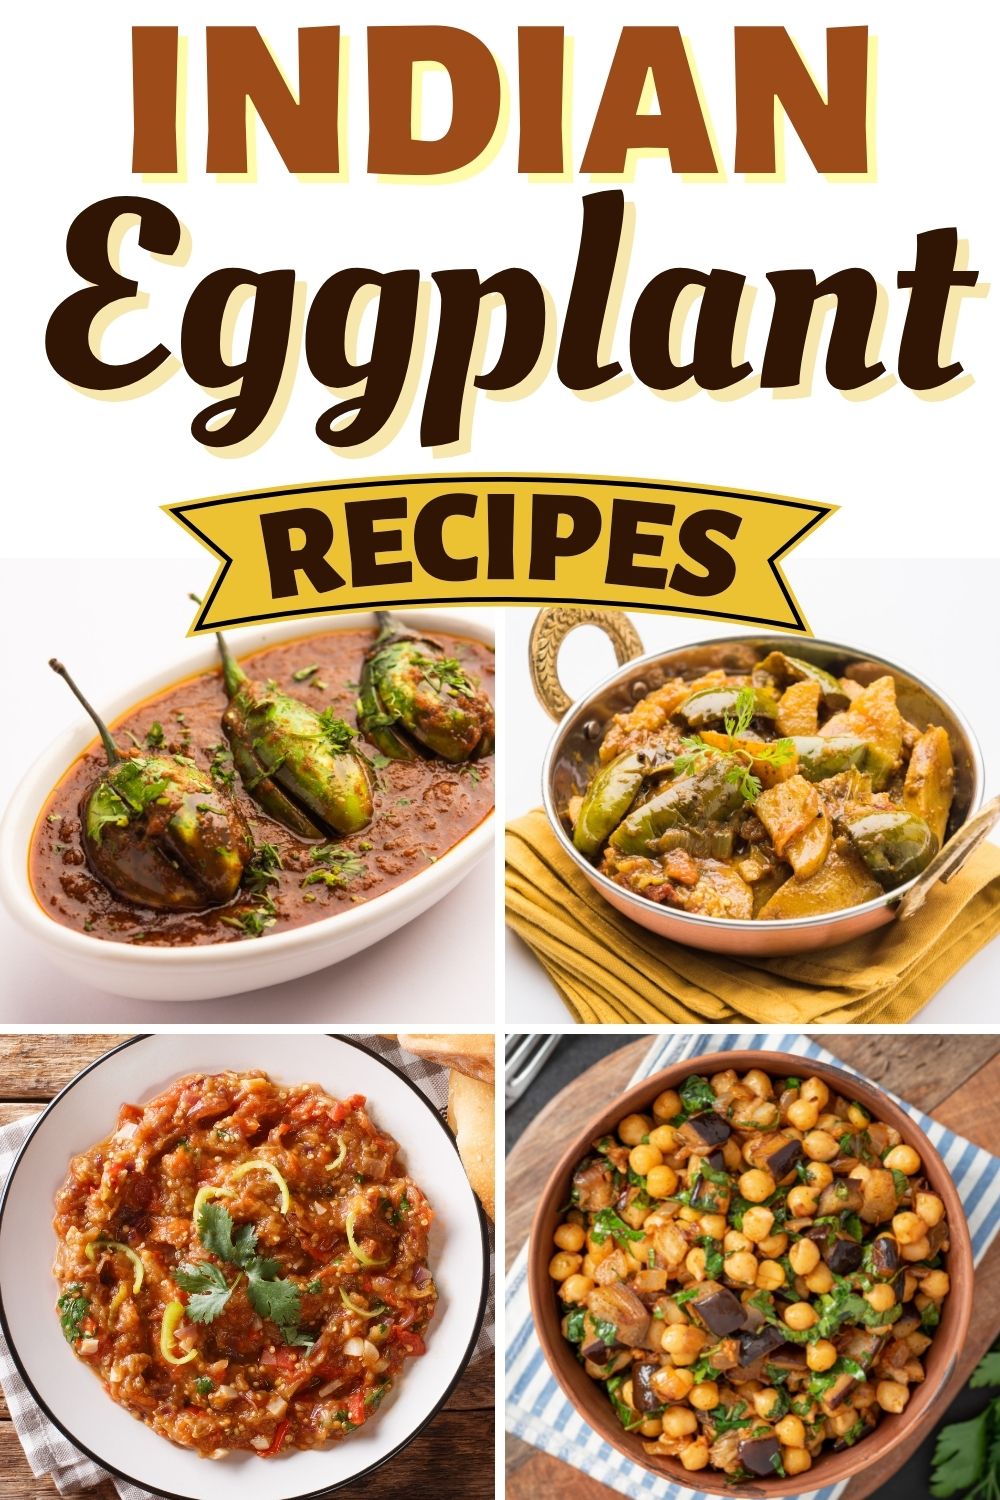 Indian Eggplant Recipes